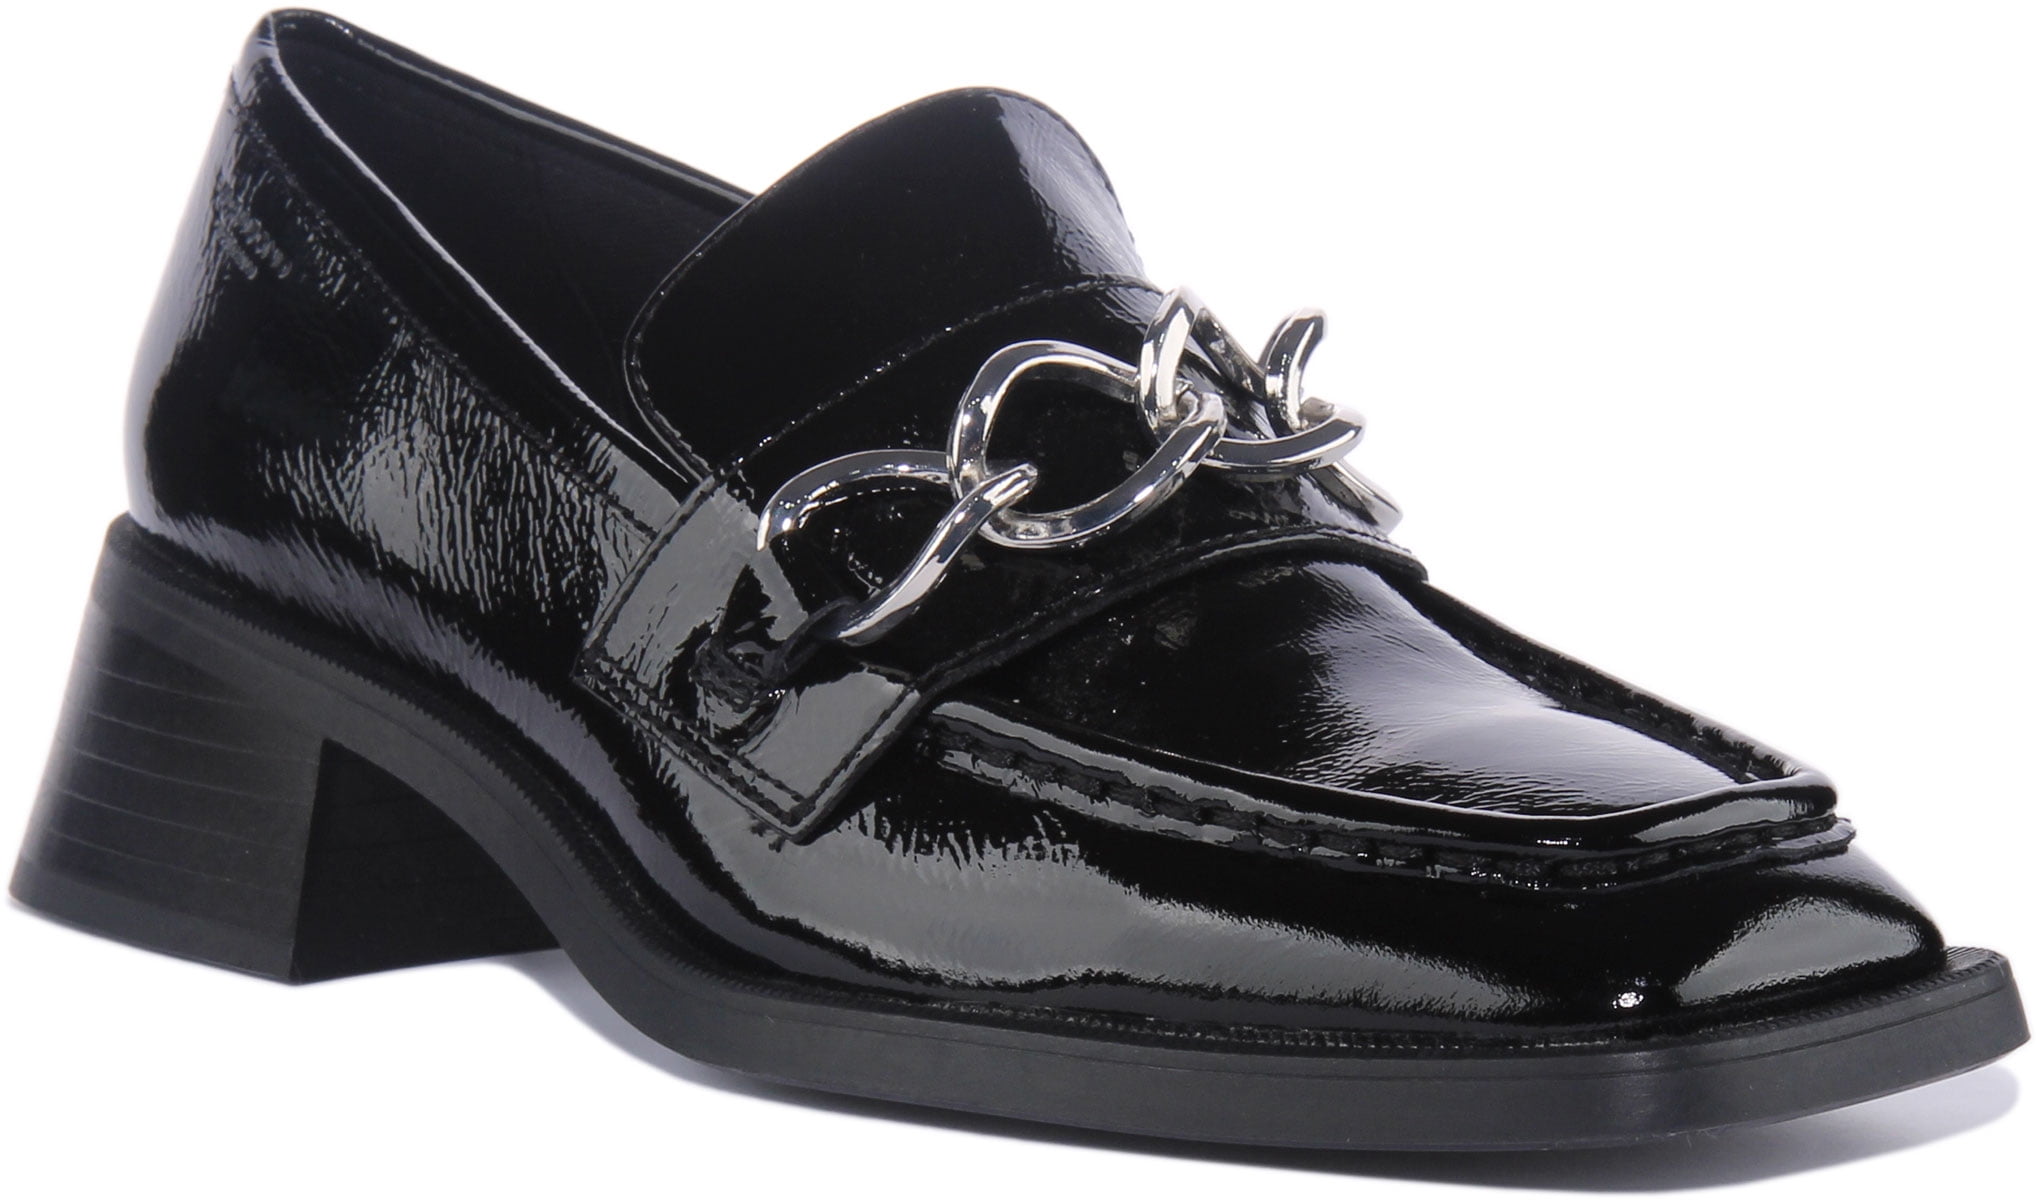 Modig favorit Fremsyn Vagabond Blanca Women's Leather Block Heel Loafer Shoes In Black Size 6 -  Walmart.com